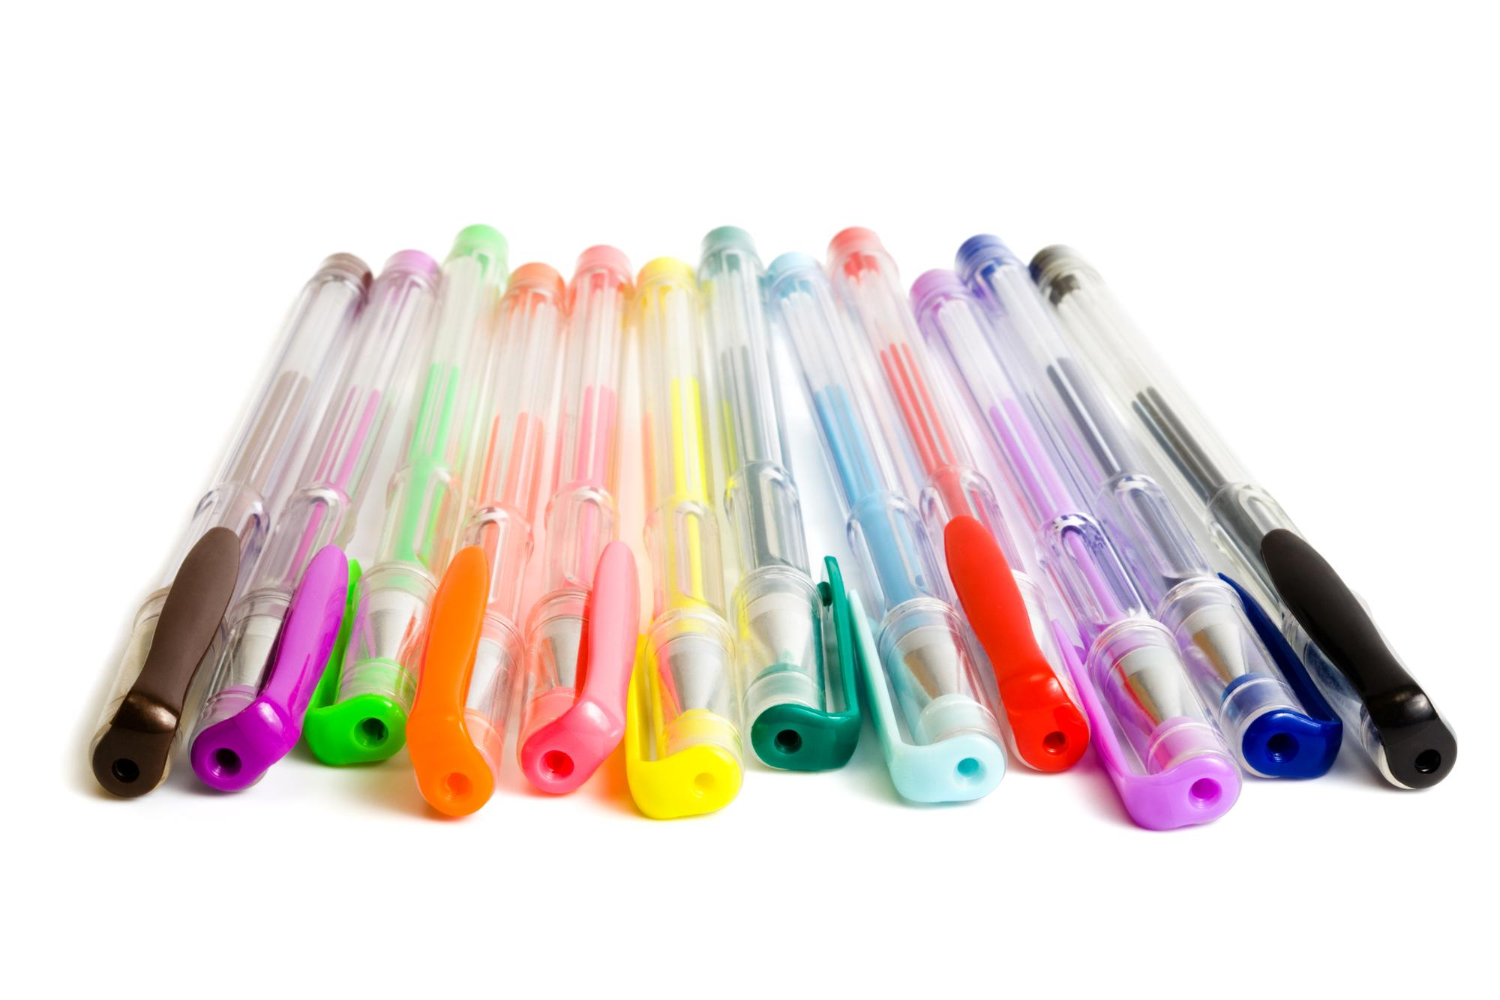 Image of gel pens.